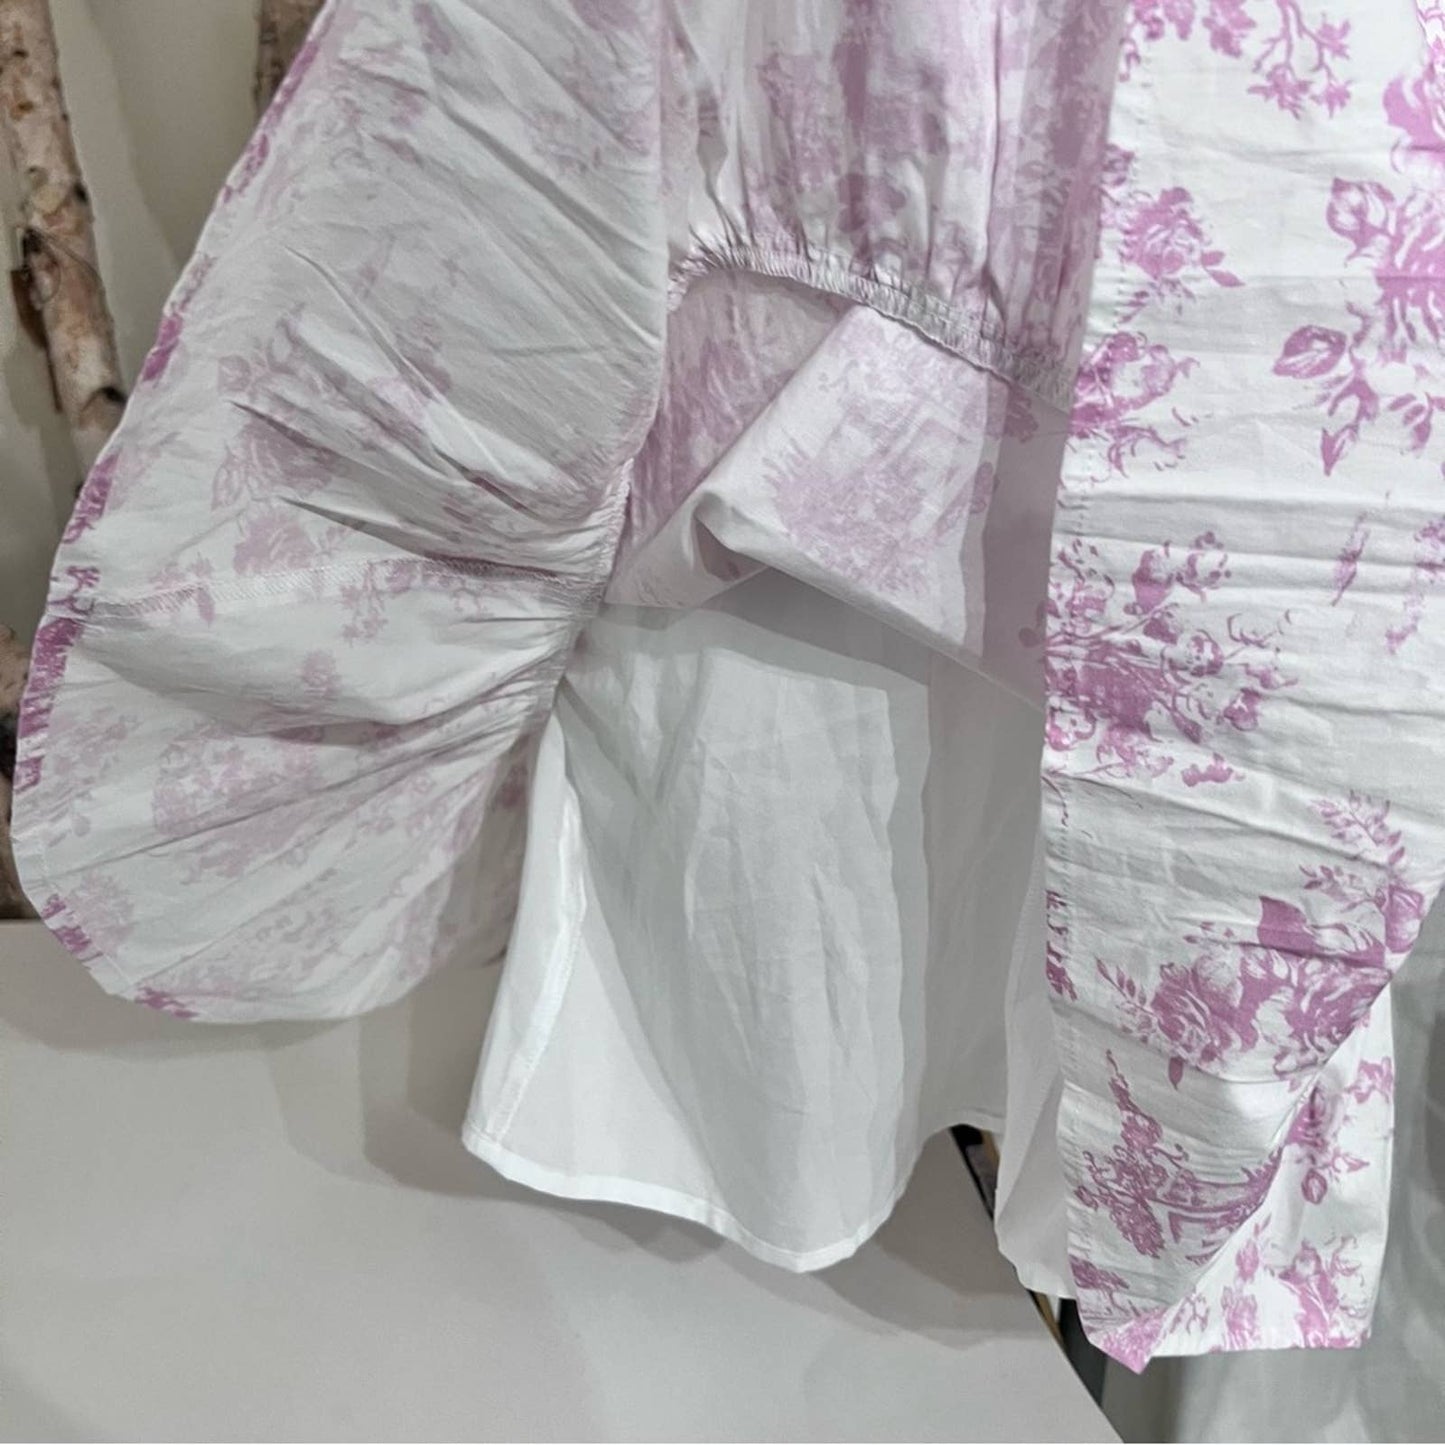 WAYF Pink & White Side Cutout Ruffled Hem Dress SM